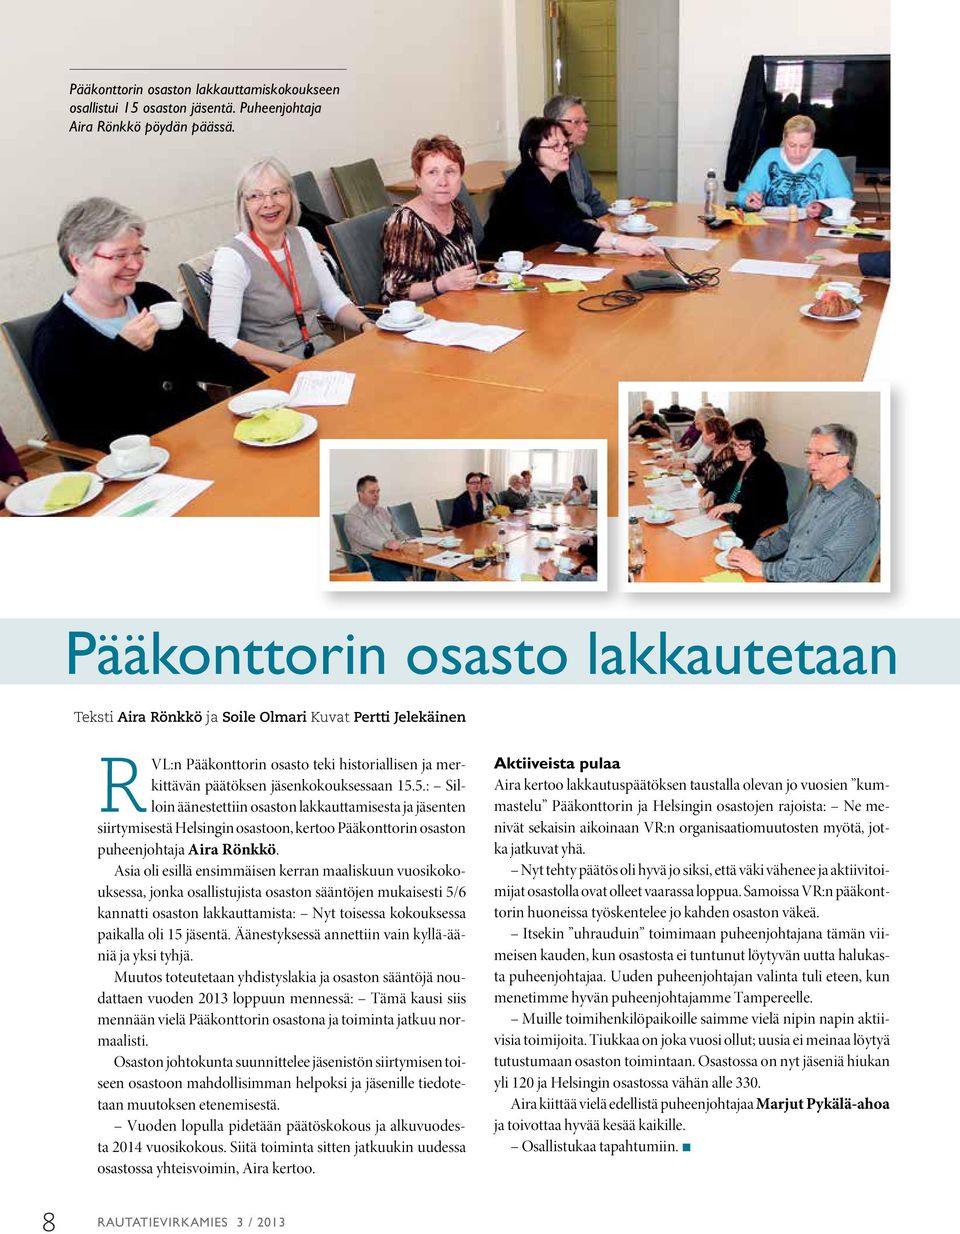 5.: Silloin äänestettiin osaston lakkauttamisesta ja jäsenten siirtymisestä Helsingin osastoon, kertoo Pääkonttorin osaston puheenjohtaja Aira Rönkkö.